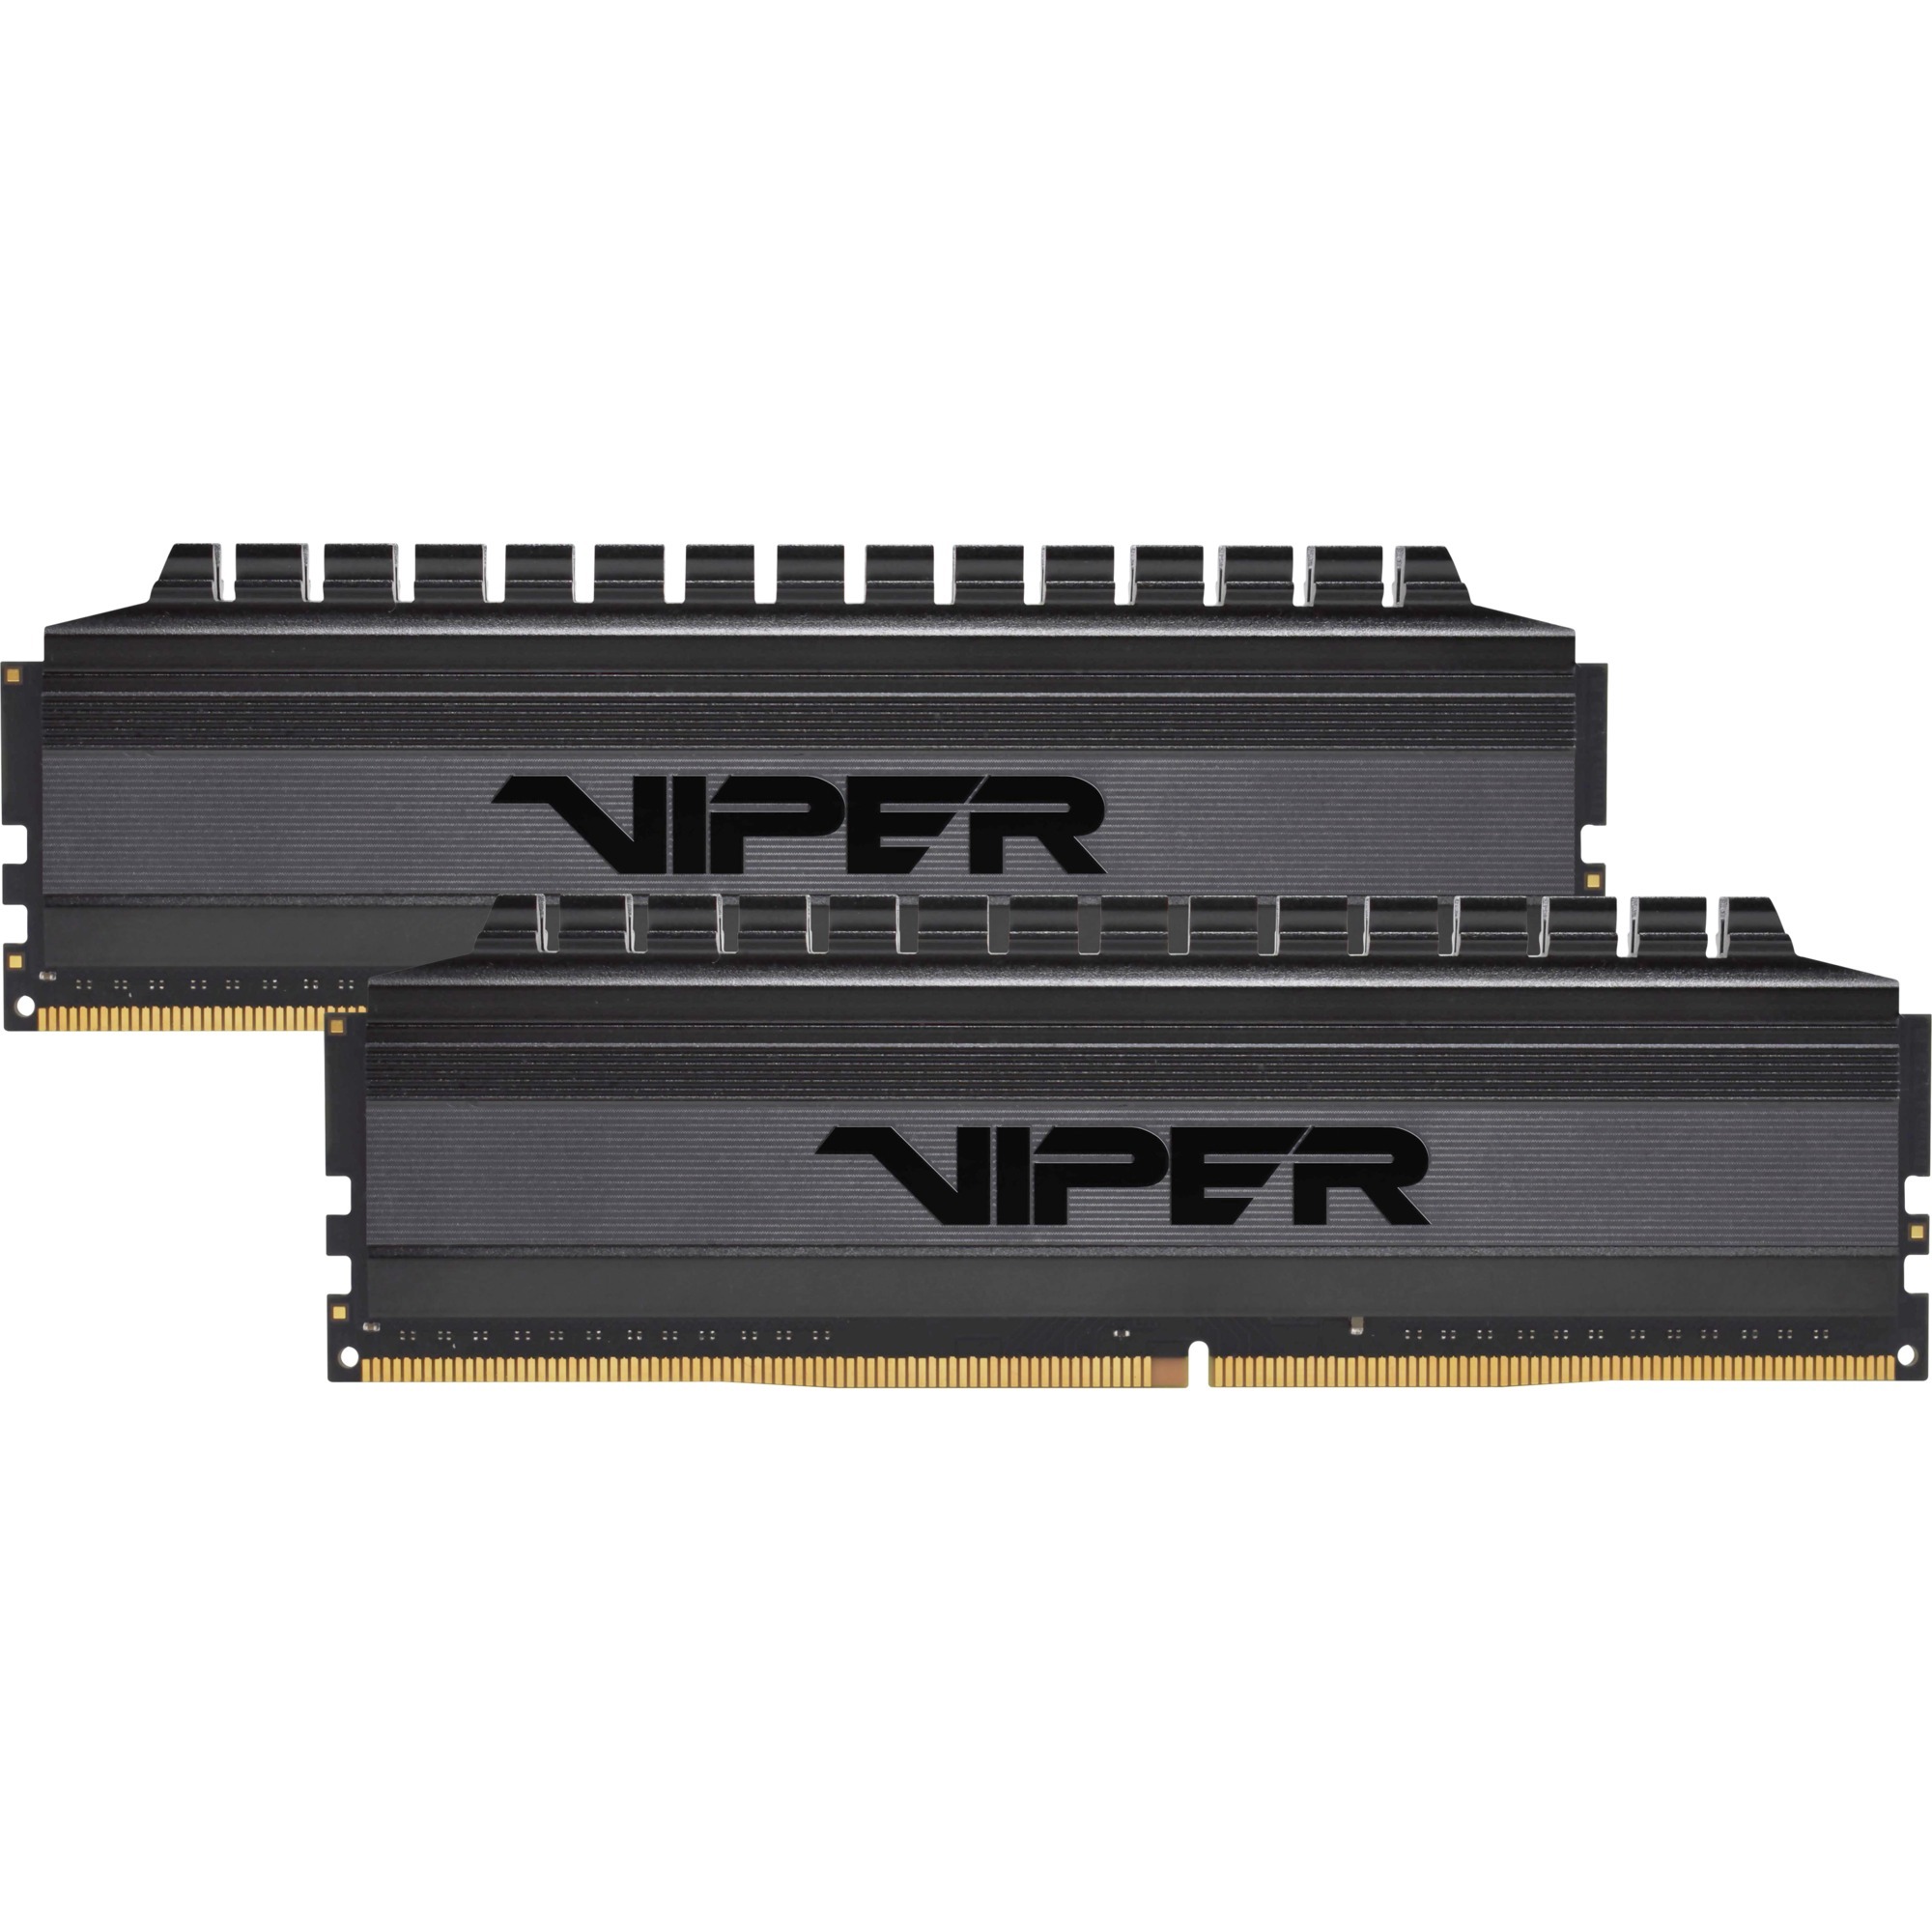 Patriot Viper 4 Blackout Series DDR4 16GB (2 x 8GB) 3200MHz Kit